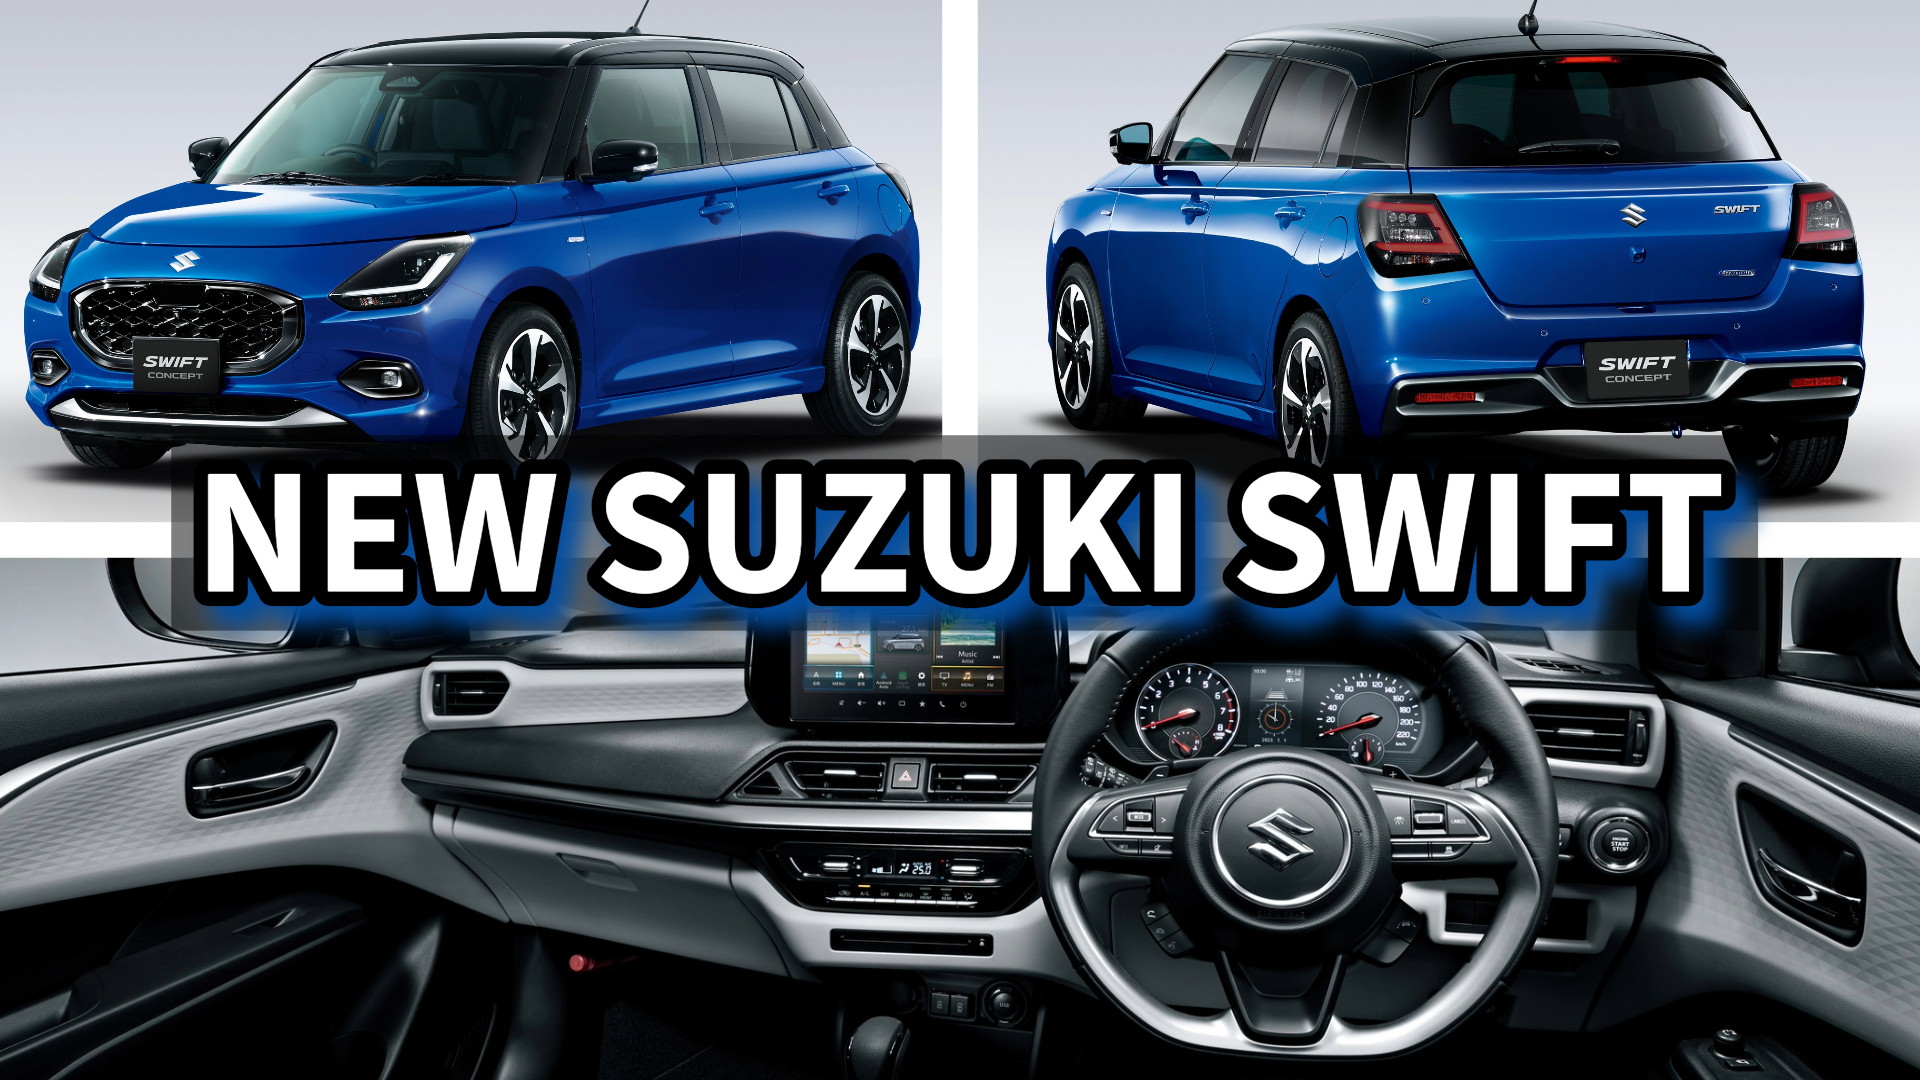 Lightweight New Suzuki Swift Sport 'Taken To The Next Level